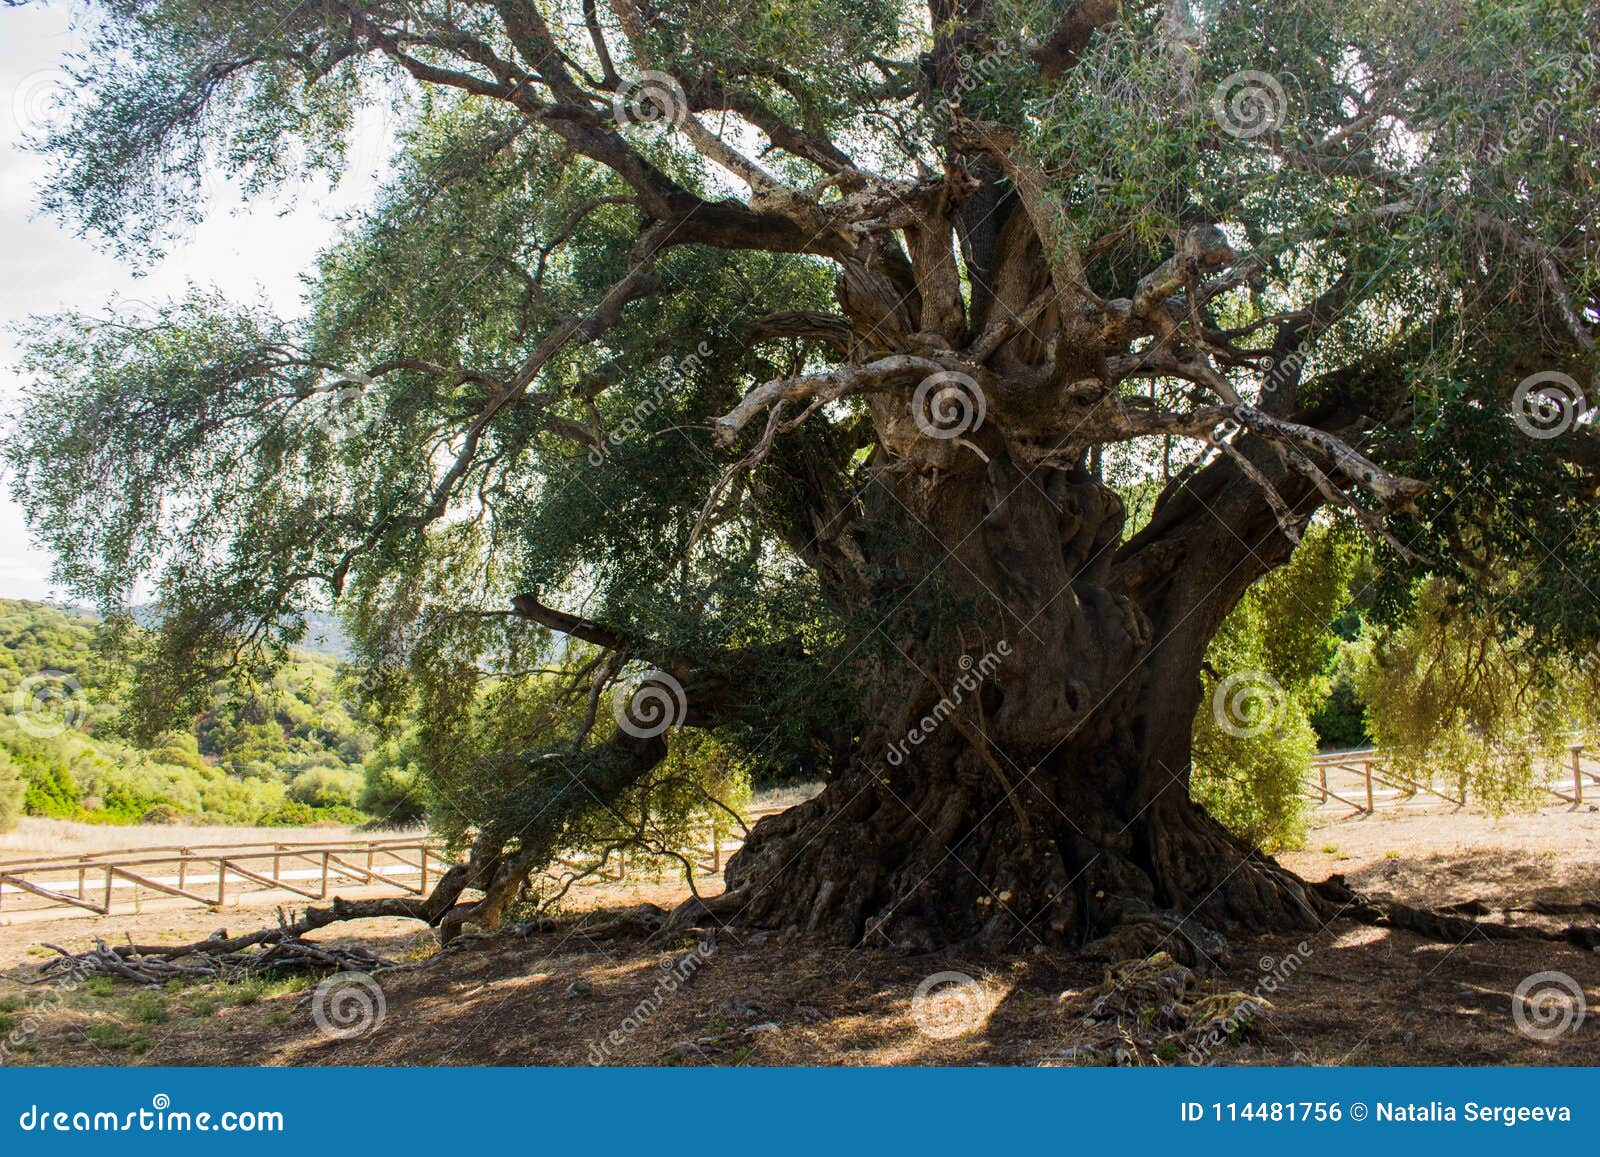 olivastro millenario - thousand years old tree